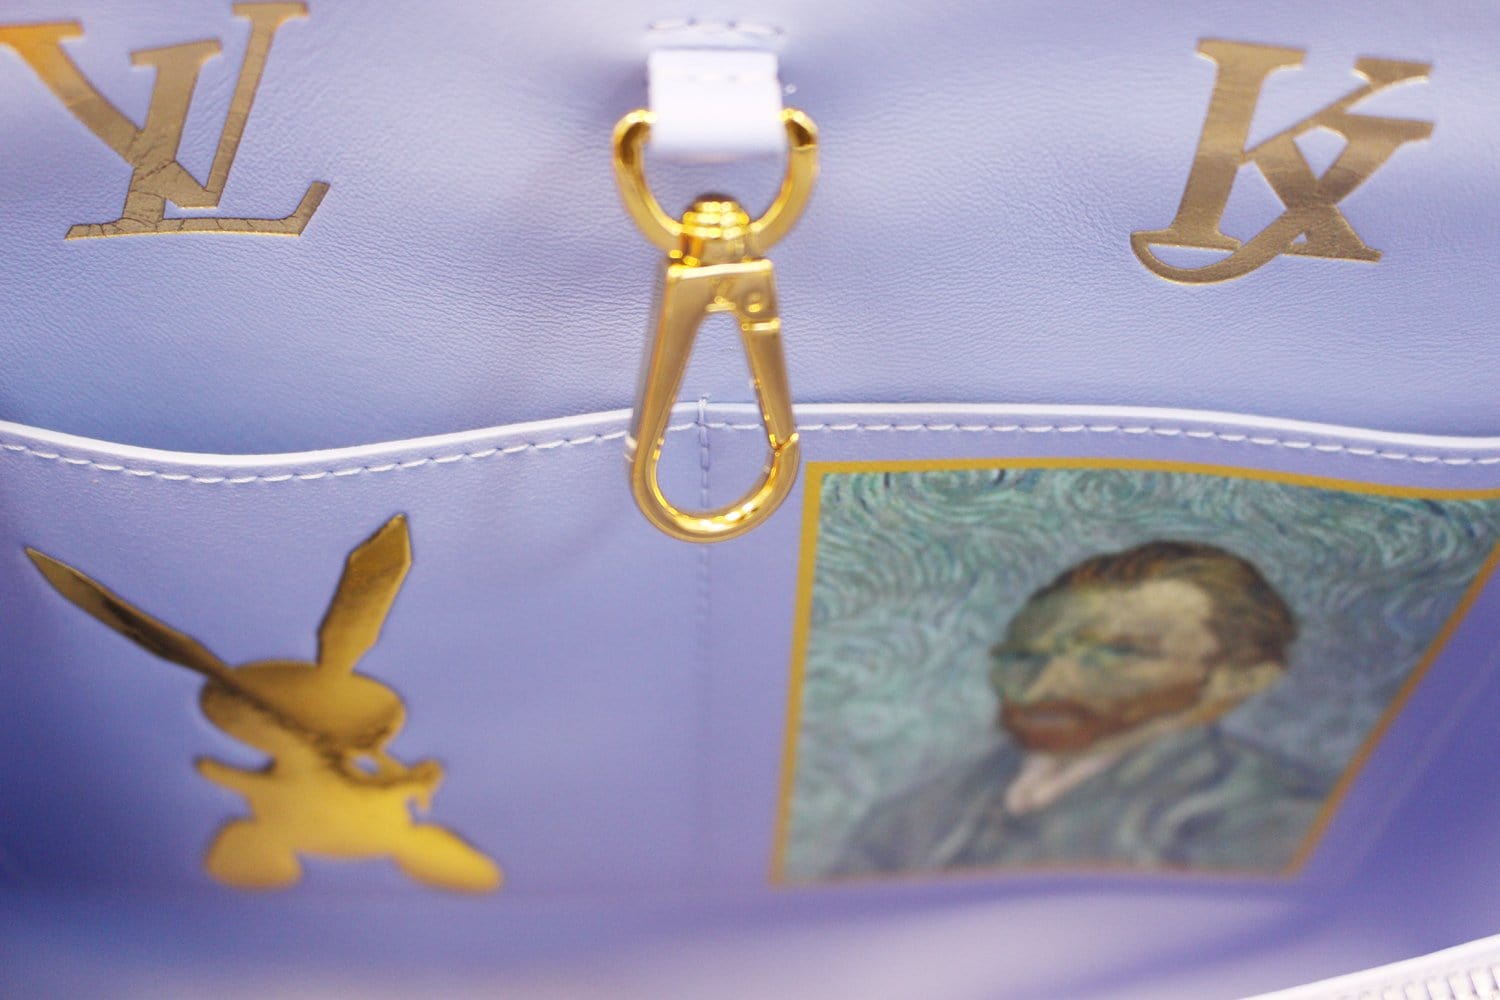 Van Gogh Clutch - Louis Vuitton  Bags, Louis vuitton purse, Purses and  handbags